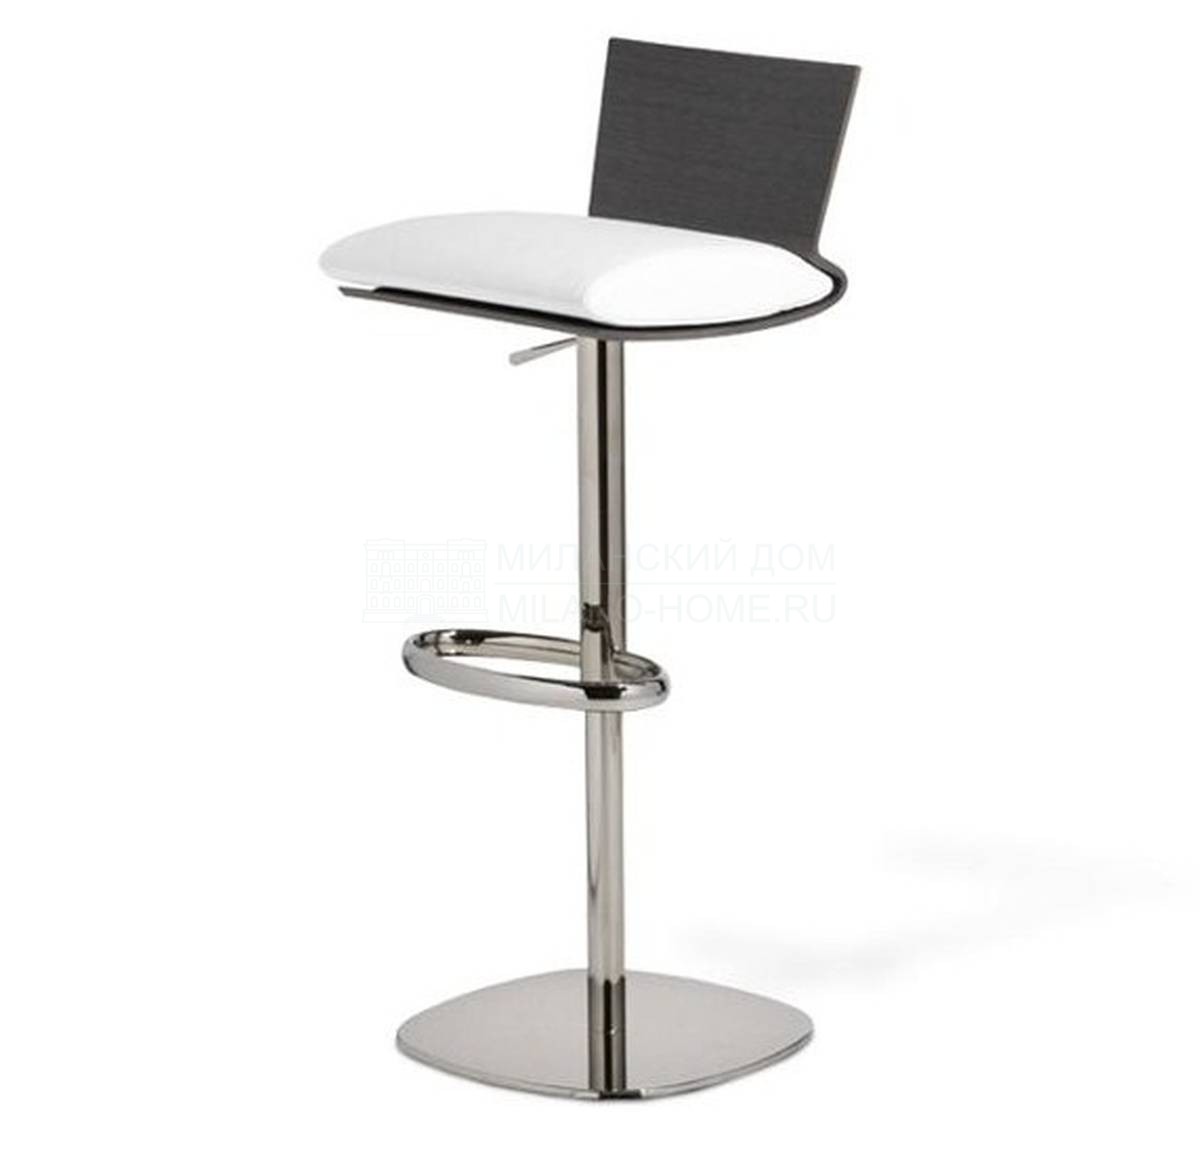 Барный стул Ublo stool из Франции фабрики ROCHE BOBOIS